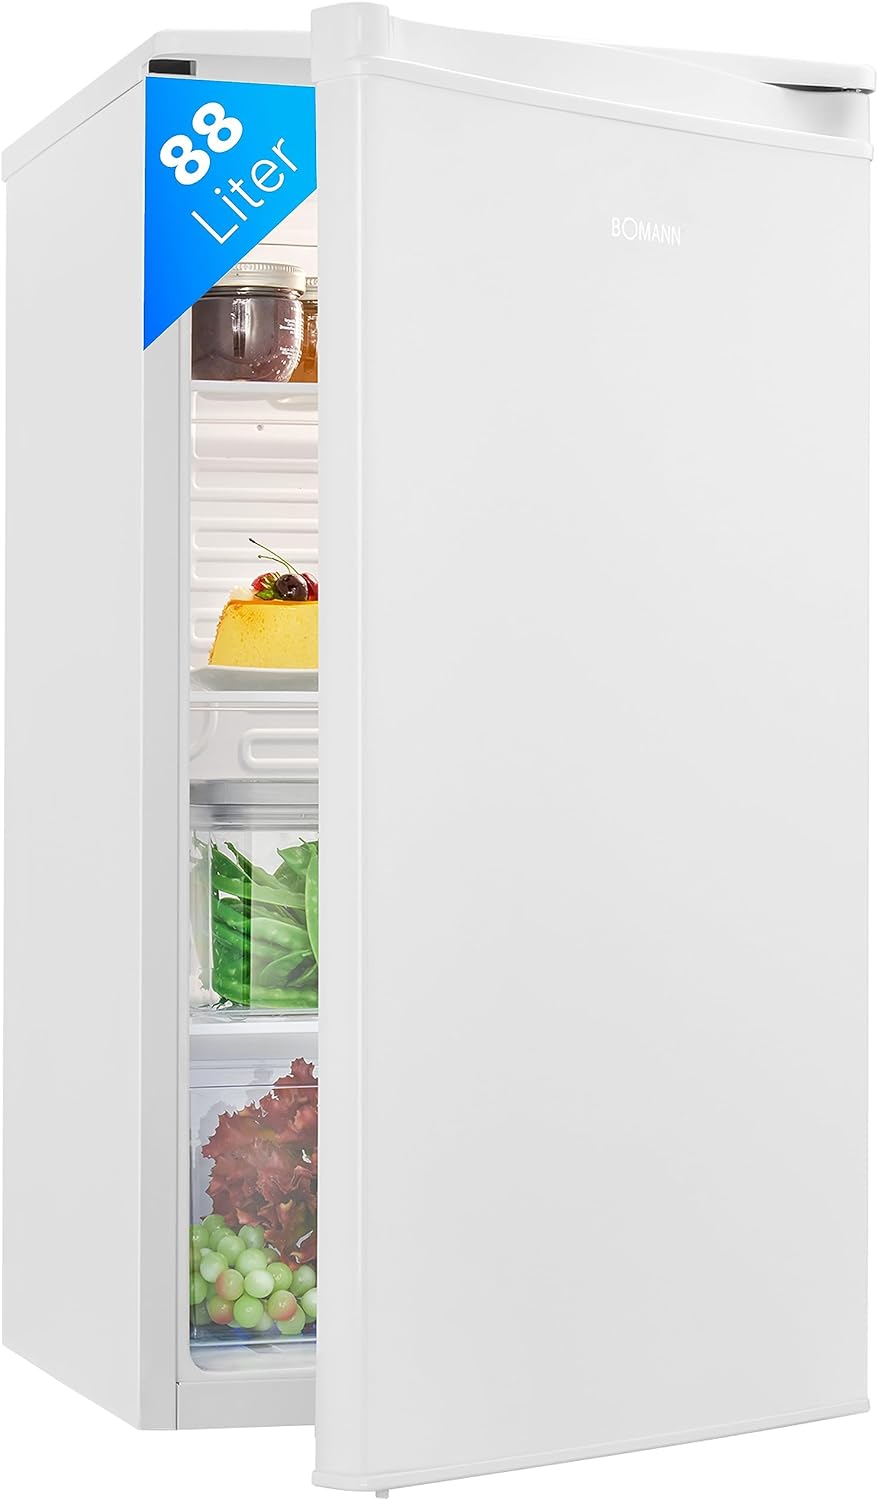 Bomann® Frigorifero senza congelatore, capacità 88 l e 3 ripiani in vetro, frigorifero piccolo con scomparto per verdure, silenzioso, fermata della porta sostituibile, frigorifero autoportante con